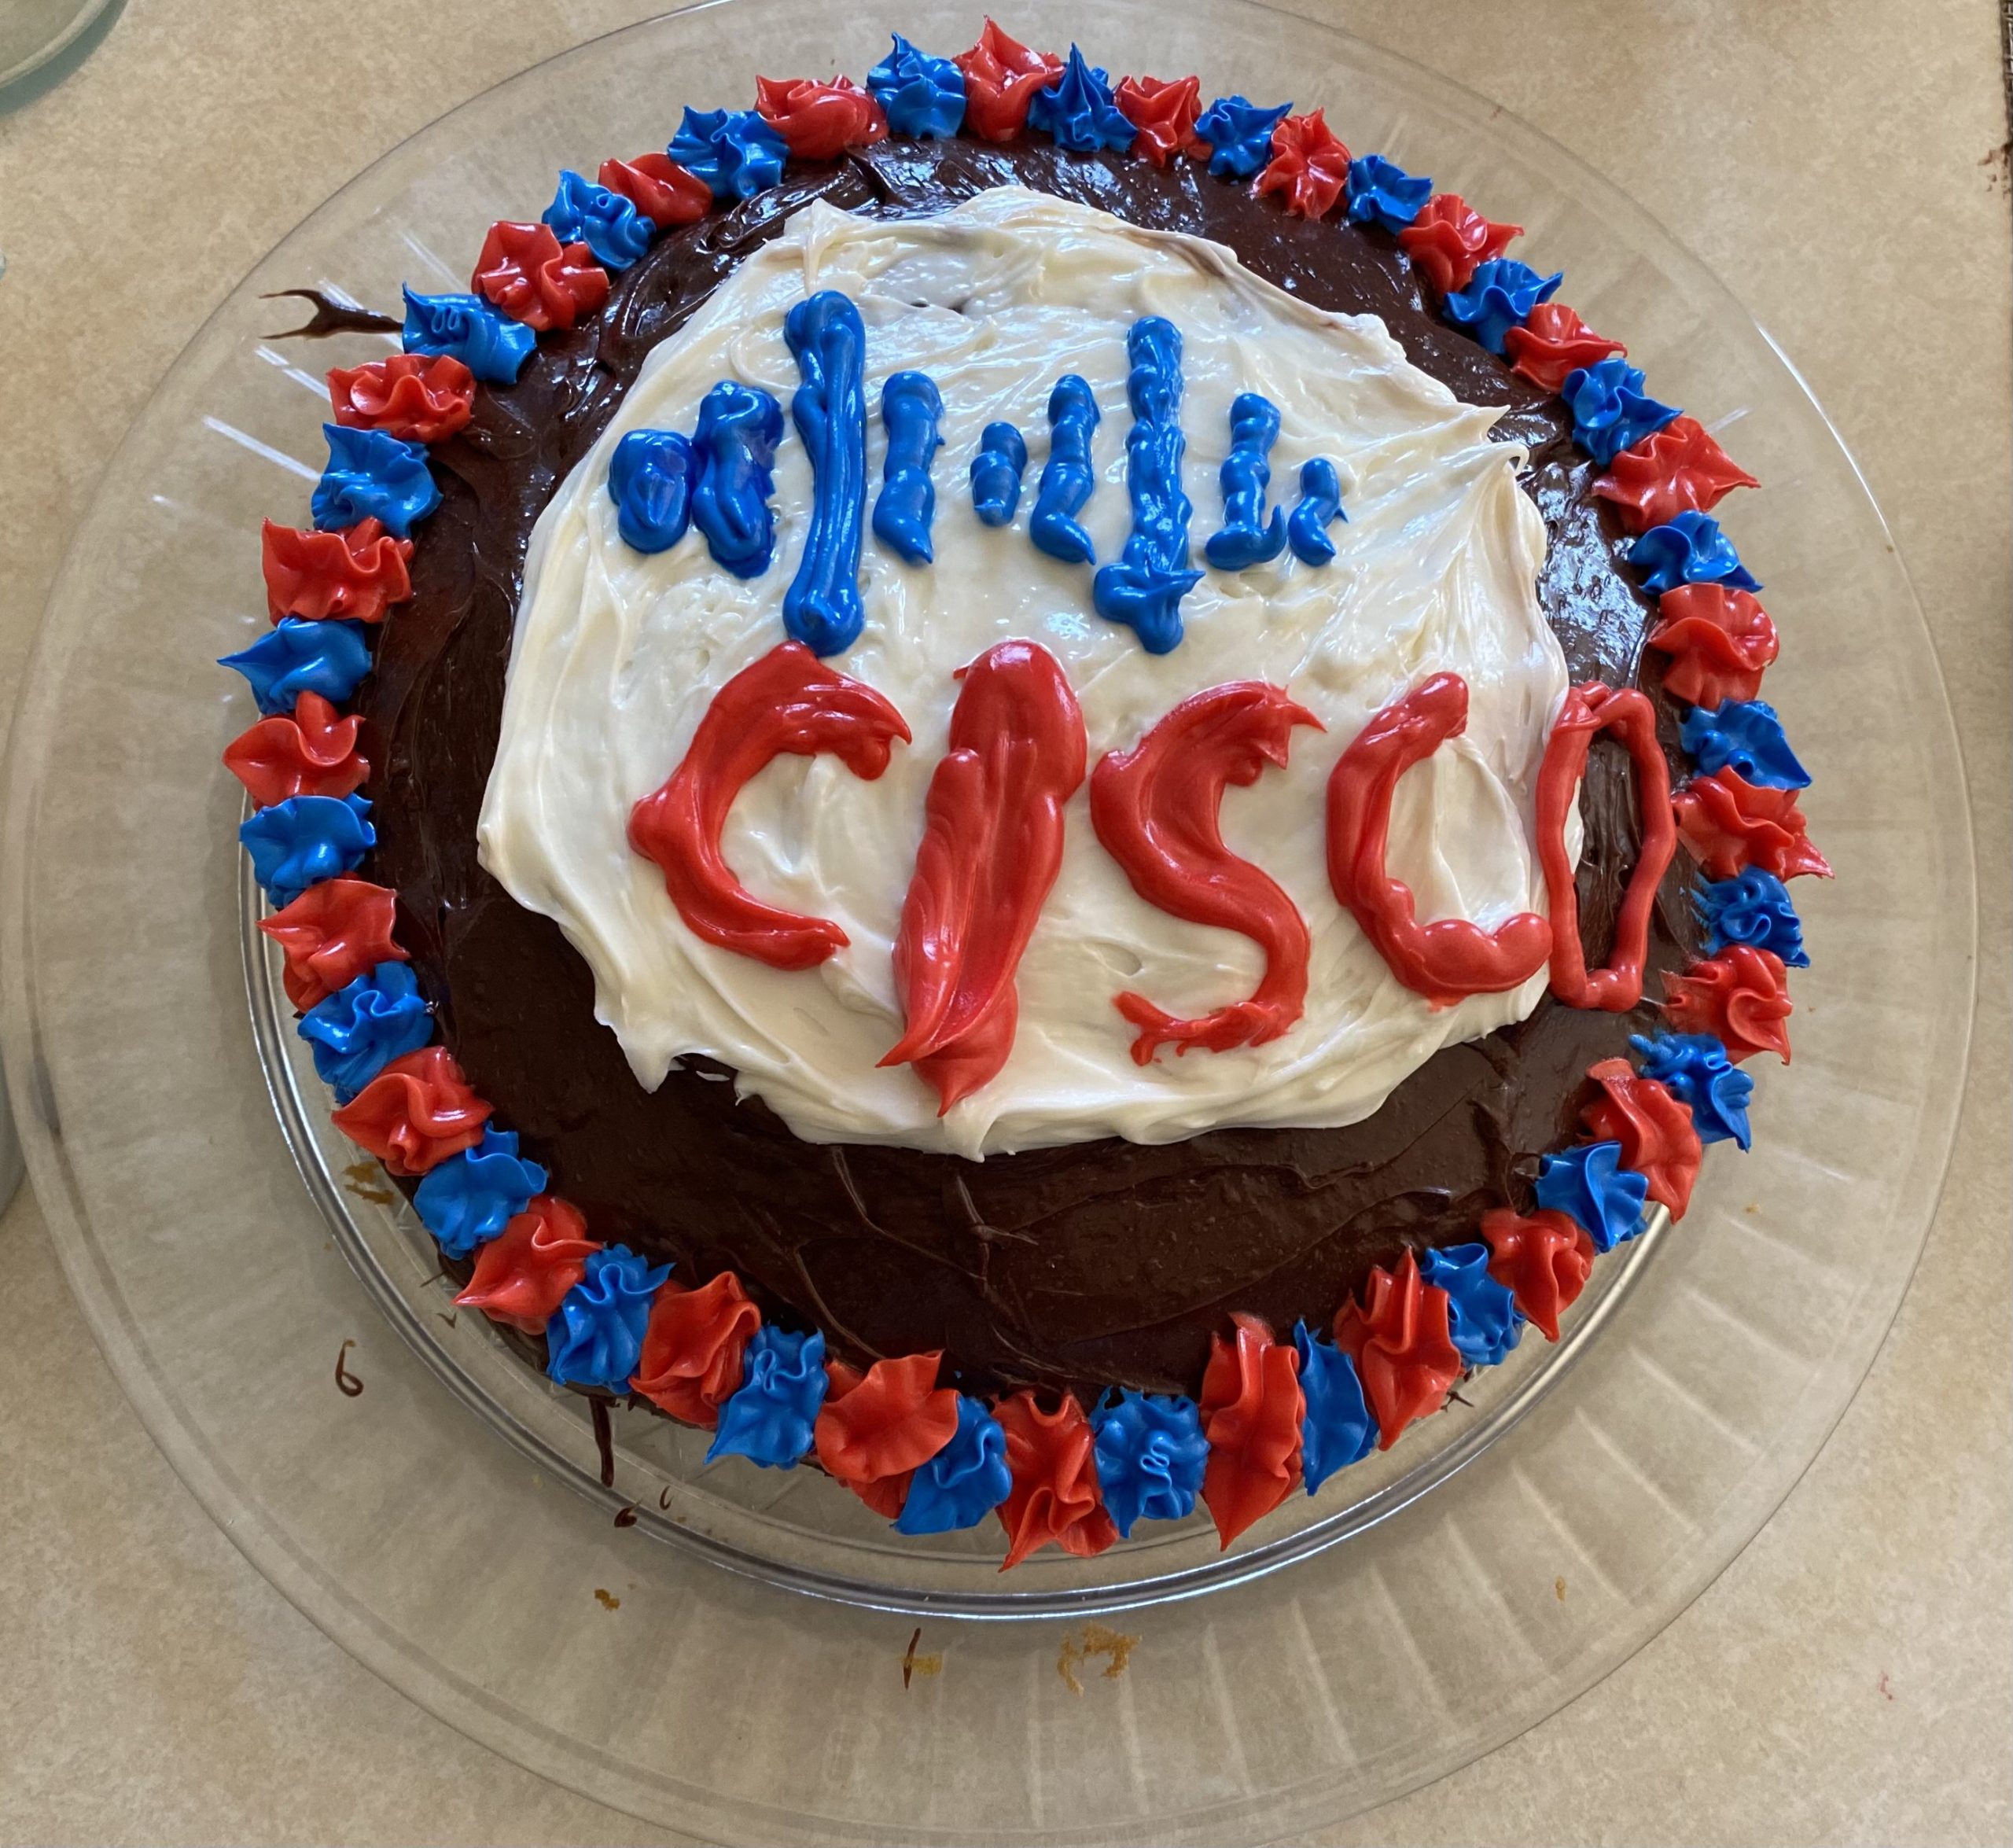 A Cisco cake.